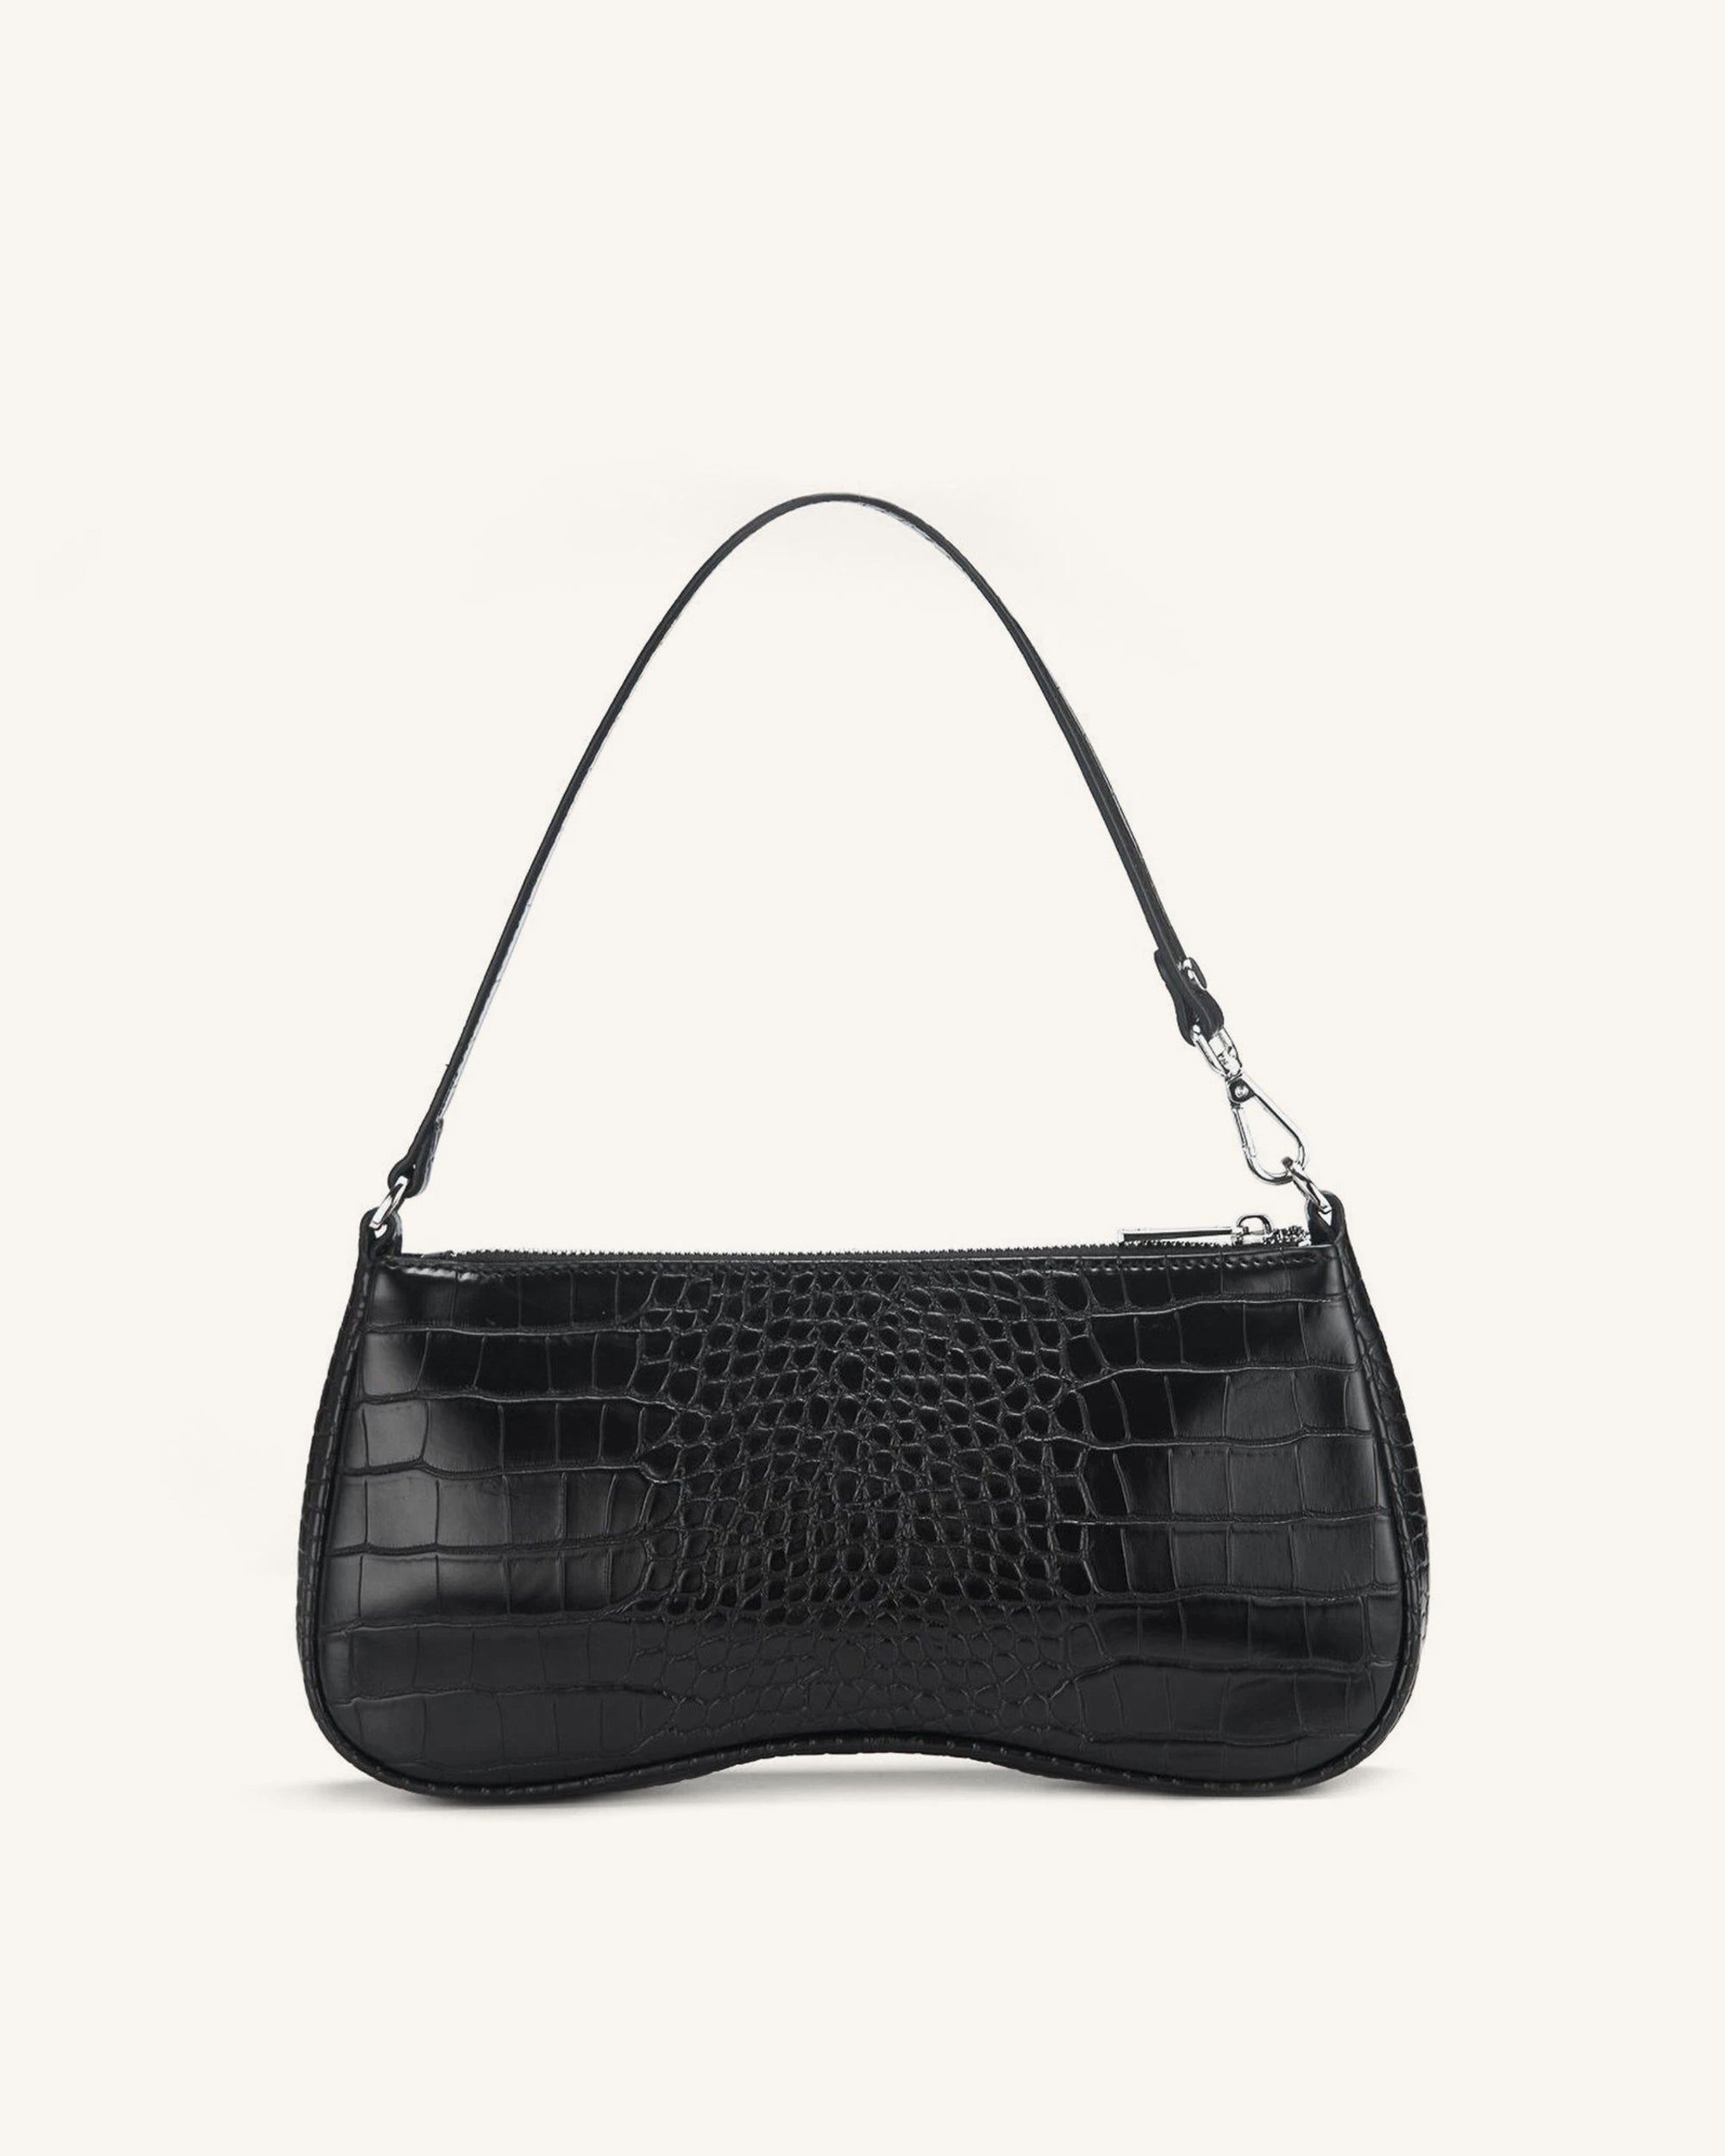 JW Pei Faux Leather Alligator Embossed Small Crossbody Handbag Black